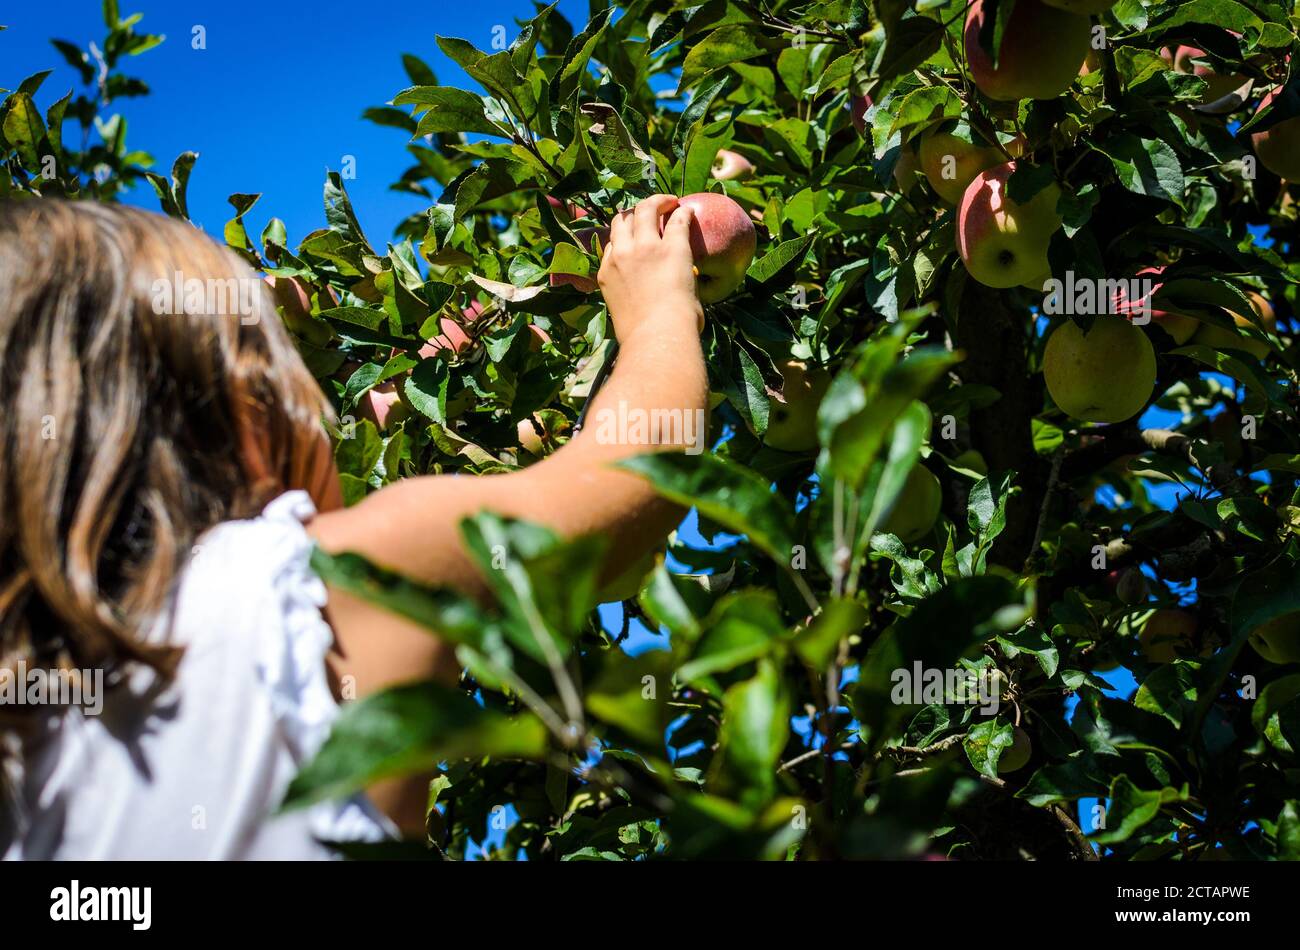 Enfant cueillant à la main de la pomme rouge savoureuse de l'arbre en été. La petite fille récolte des fruits mûrs biologiques d'un arbre dans le verger. Concept d'ea sain Banque D'Images